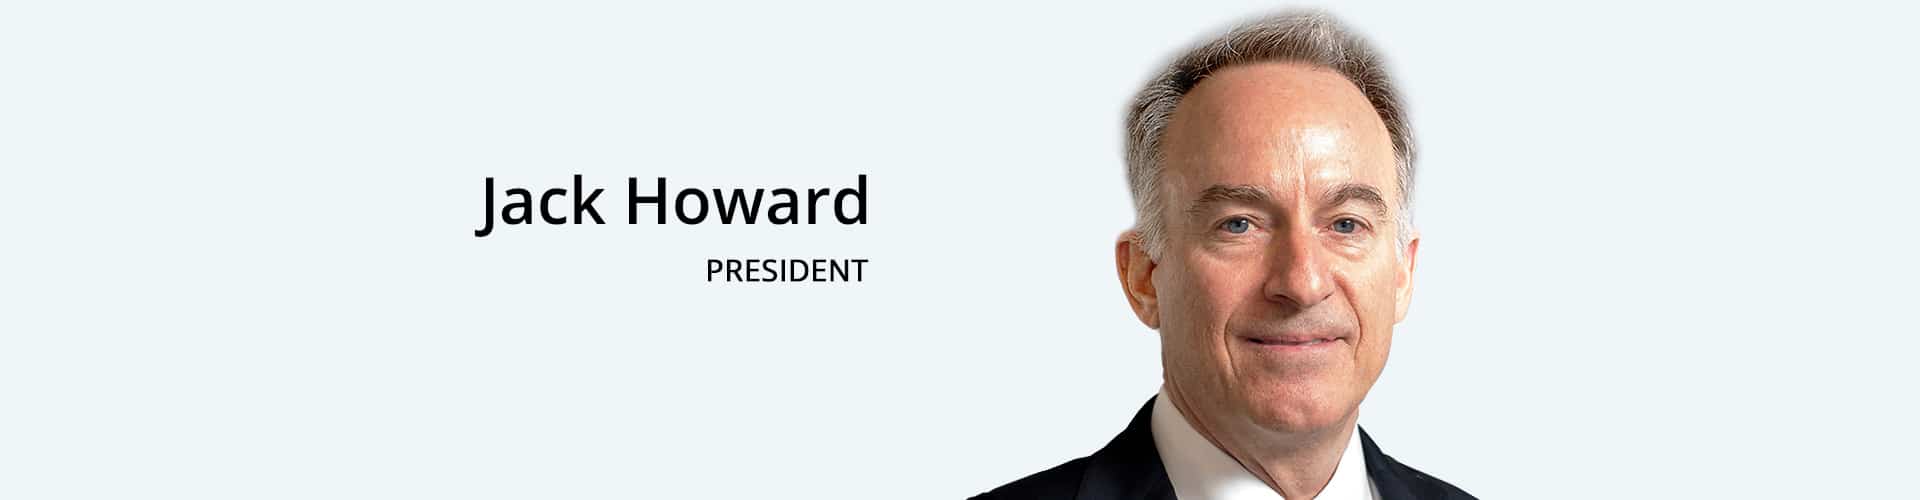 Jack Howard-President